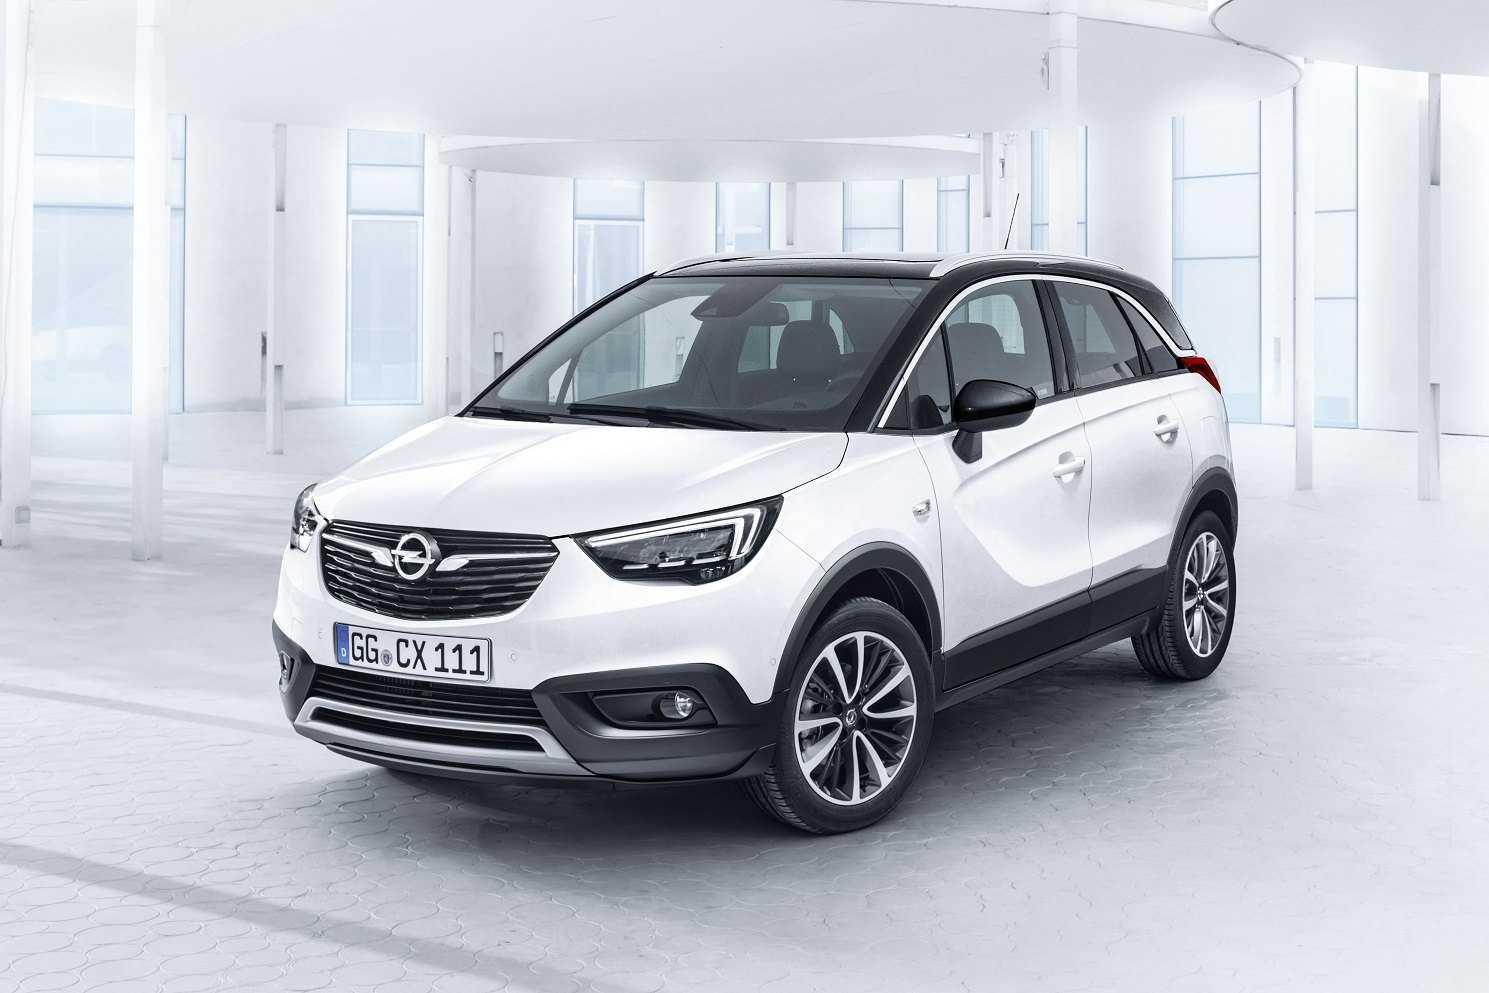 Opel crossland x 2018: стильный и вместительный сити-кросс